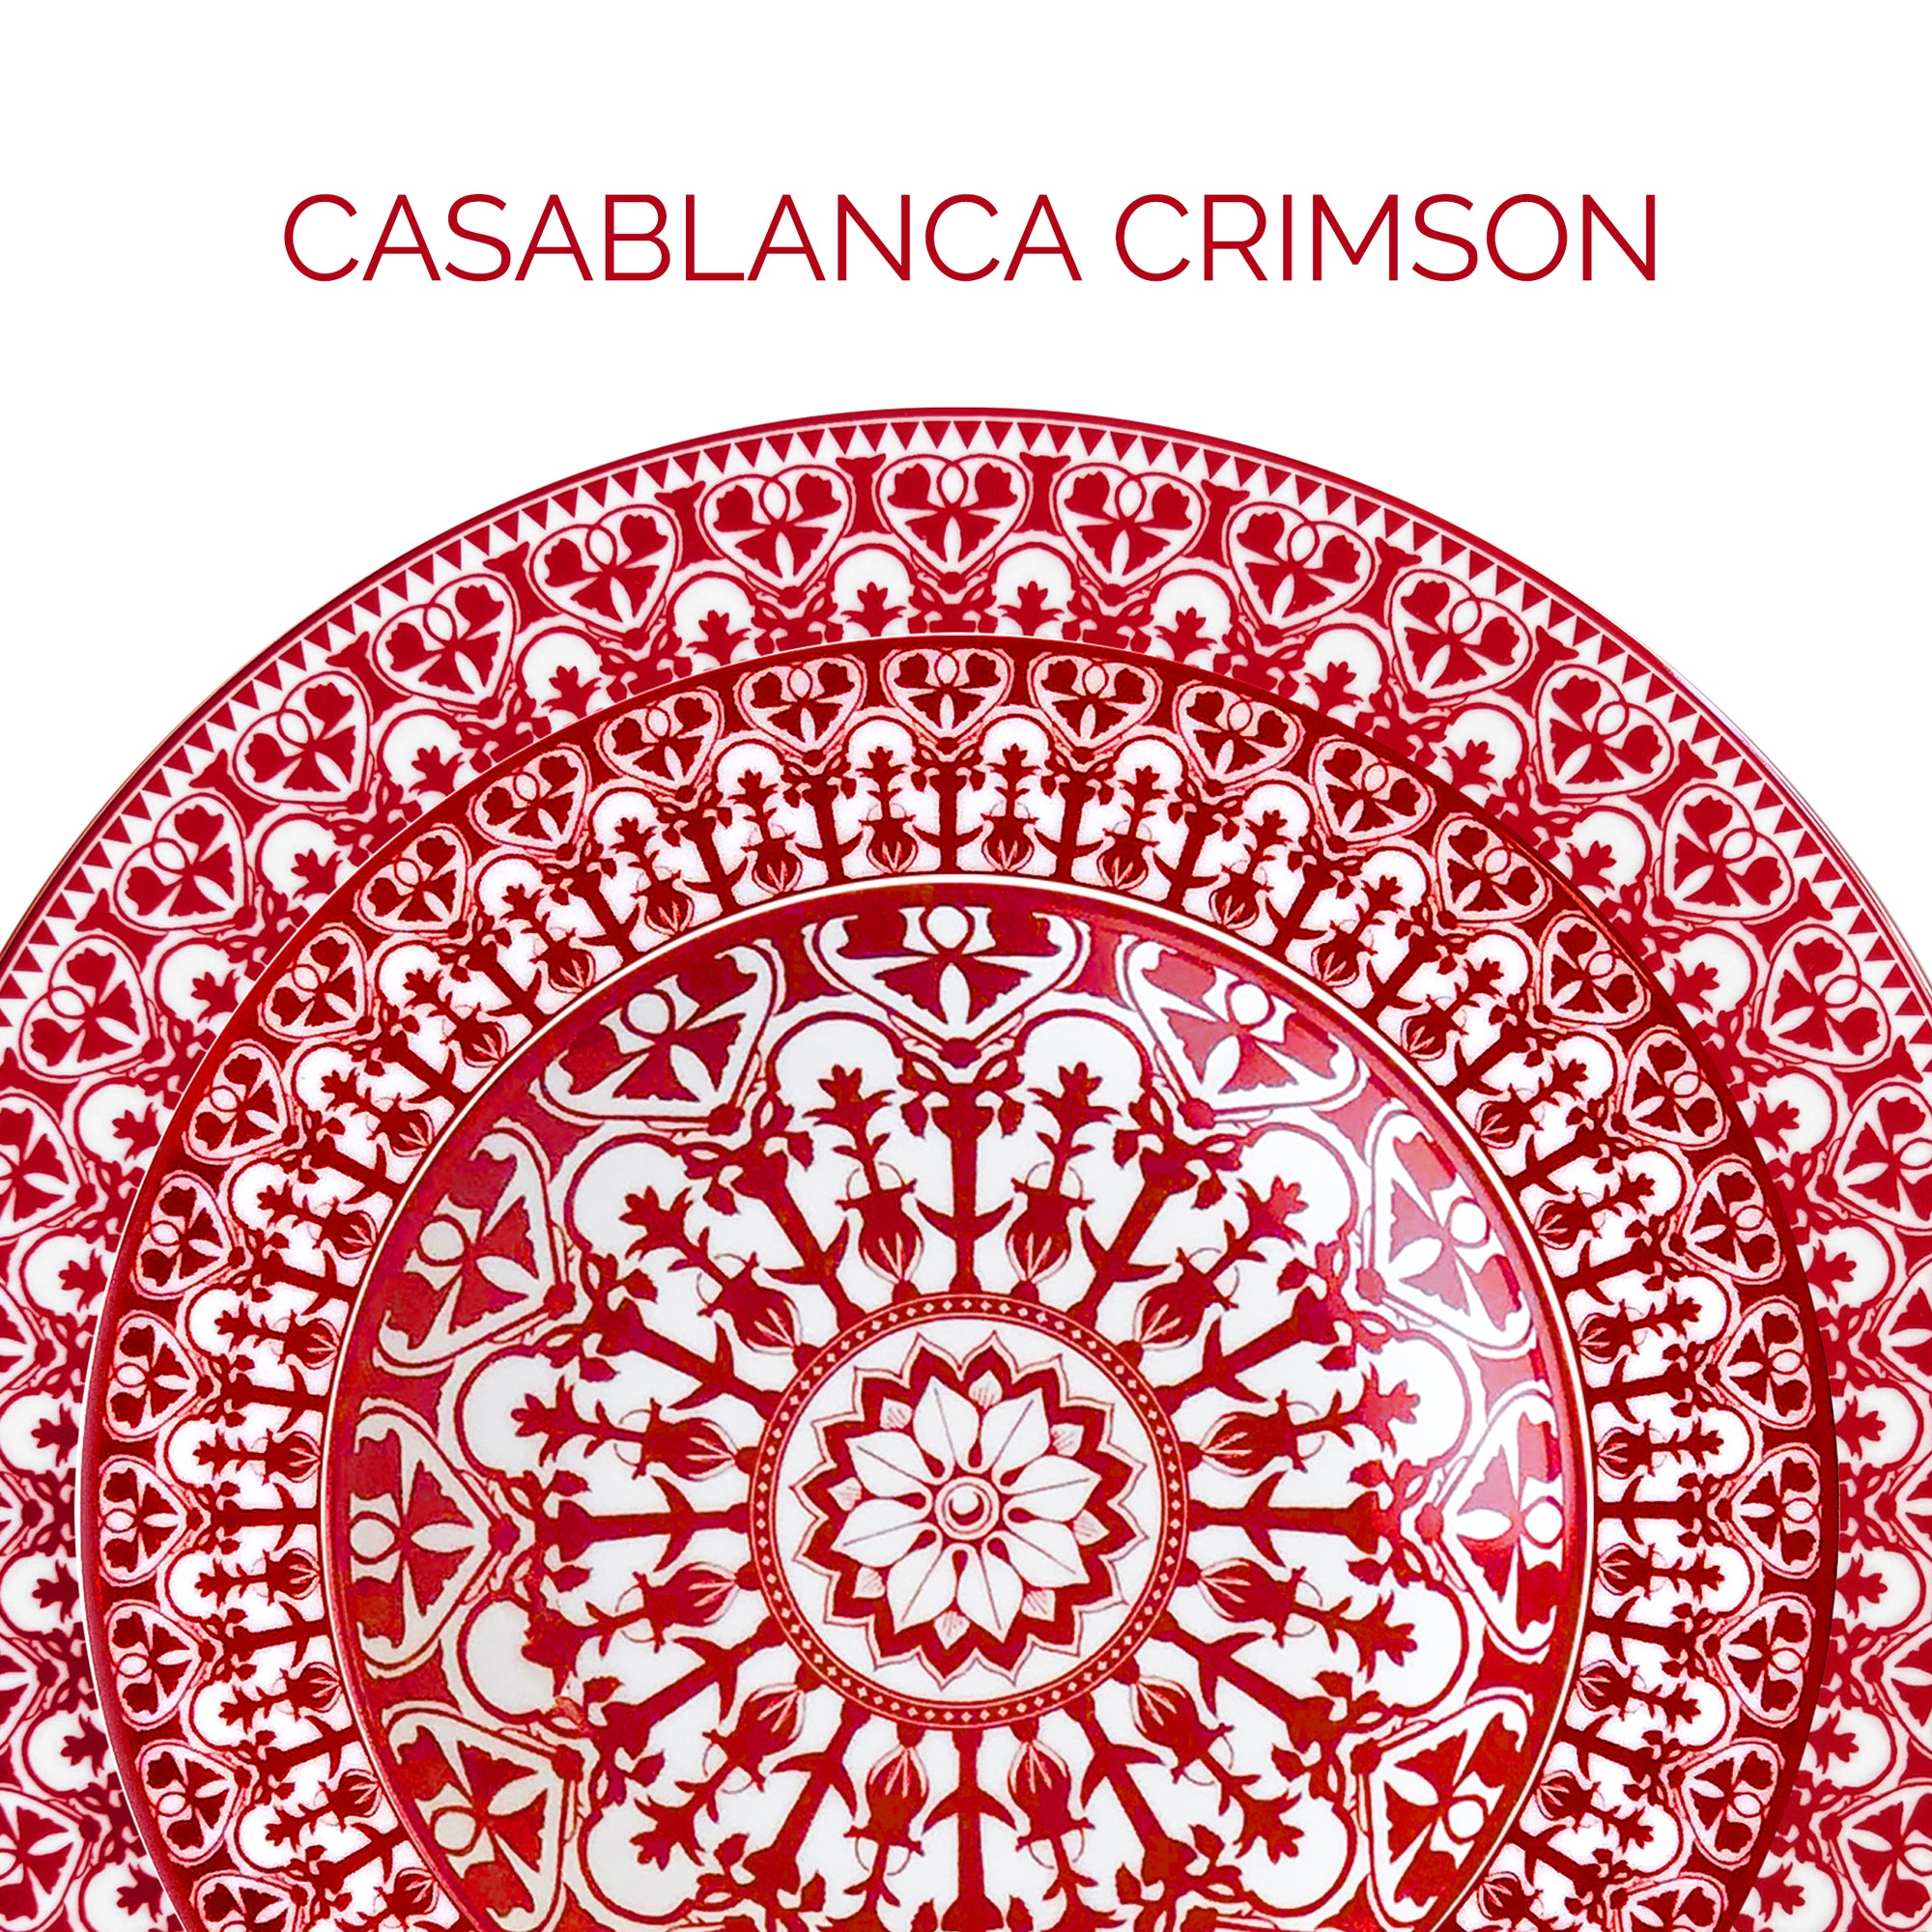 Casablanca Crimson